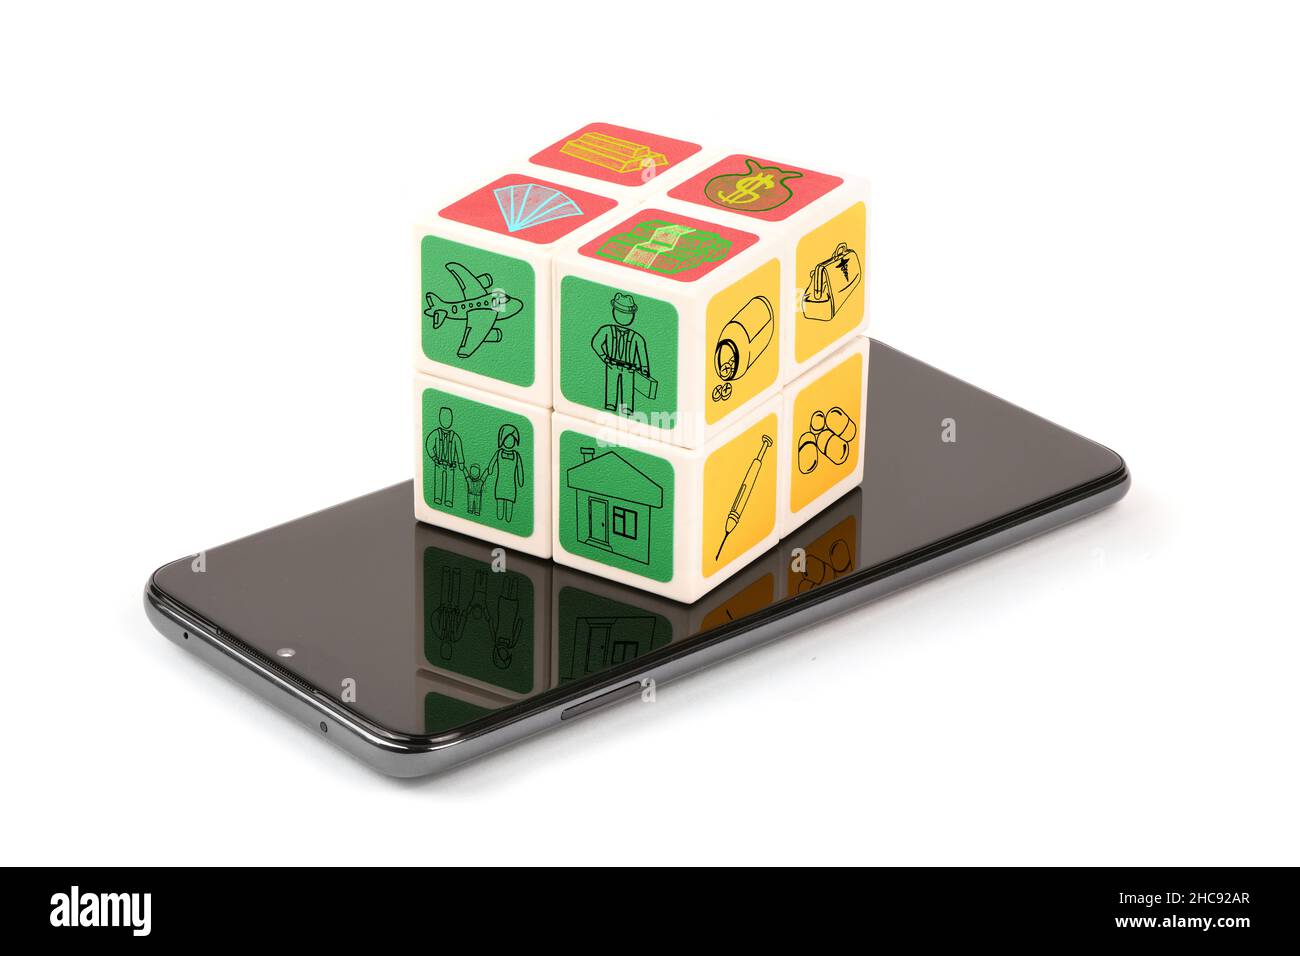 Cube avec icônes vie de famille, voyage en voiture et Voyage par avion, santé et assurance maison, icônes de gains en espèces sur smartphone mobile noir.Concept dans Banque D'Images